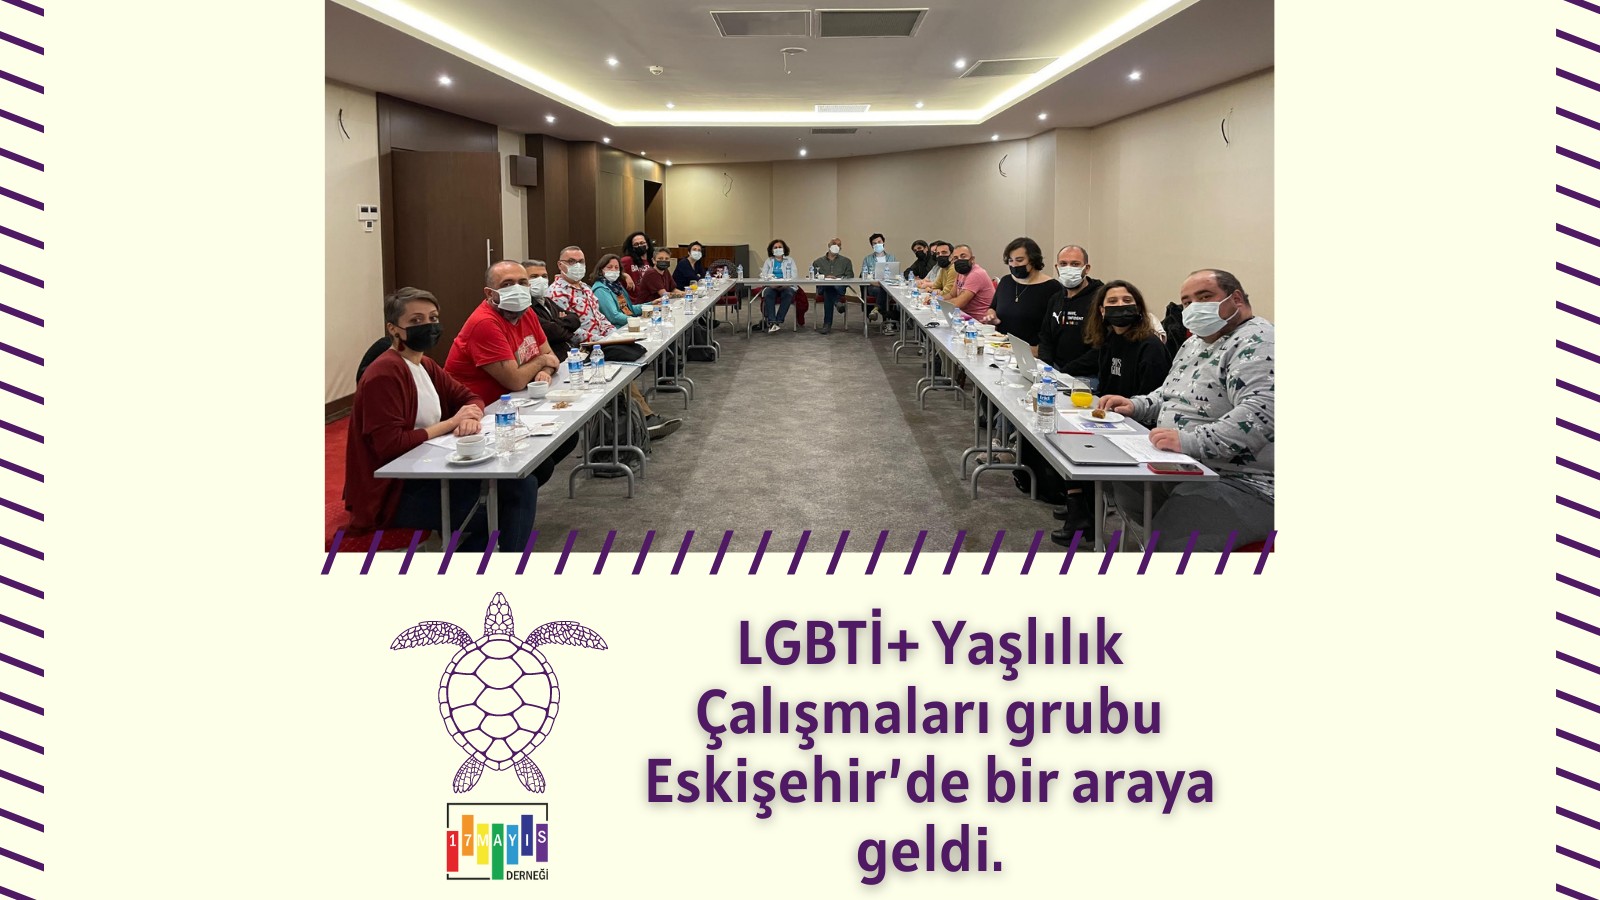 17 Mayıs Derneği LGBTİ+ Yaşlılık Çalışmaları Grubu Eskişehir’de Bir Araya Geldi! - 17 Mayıs